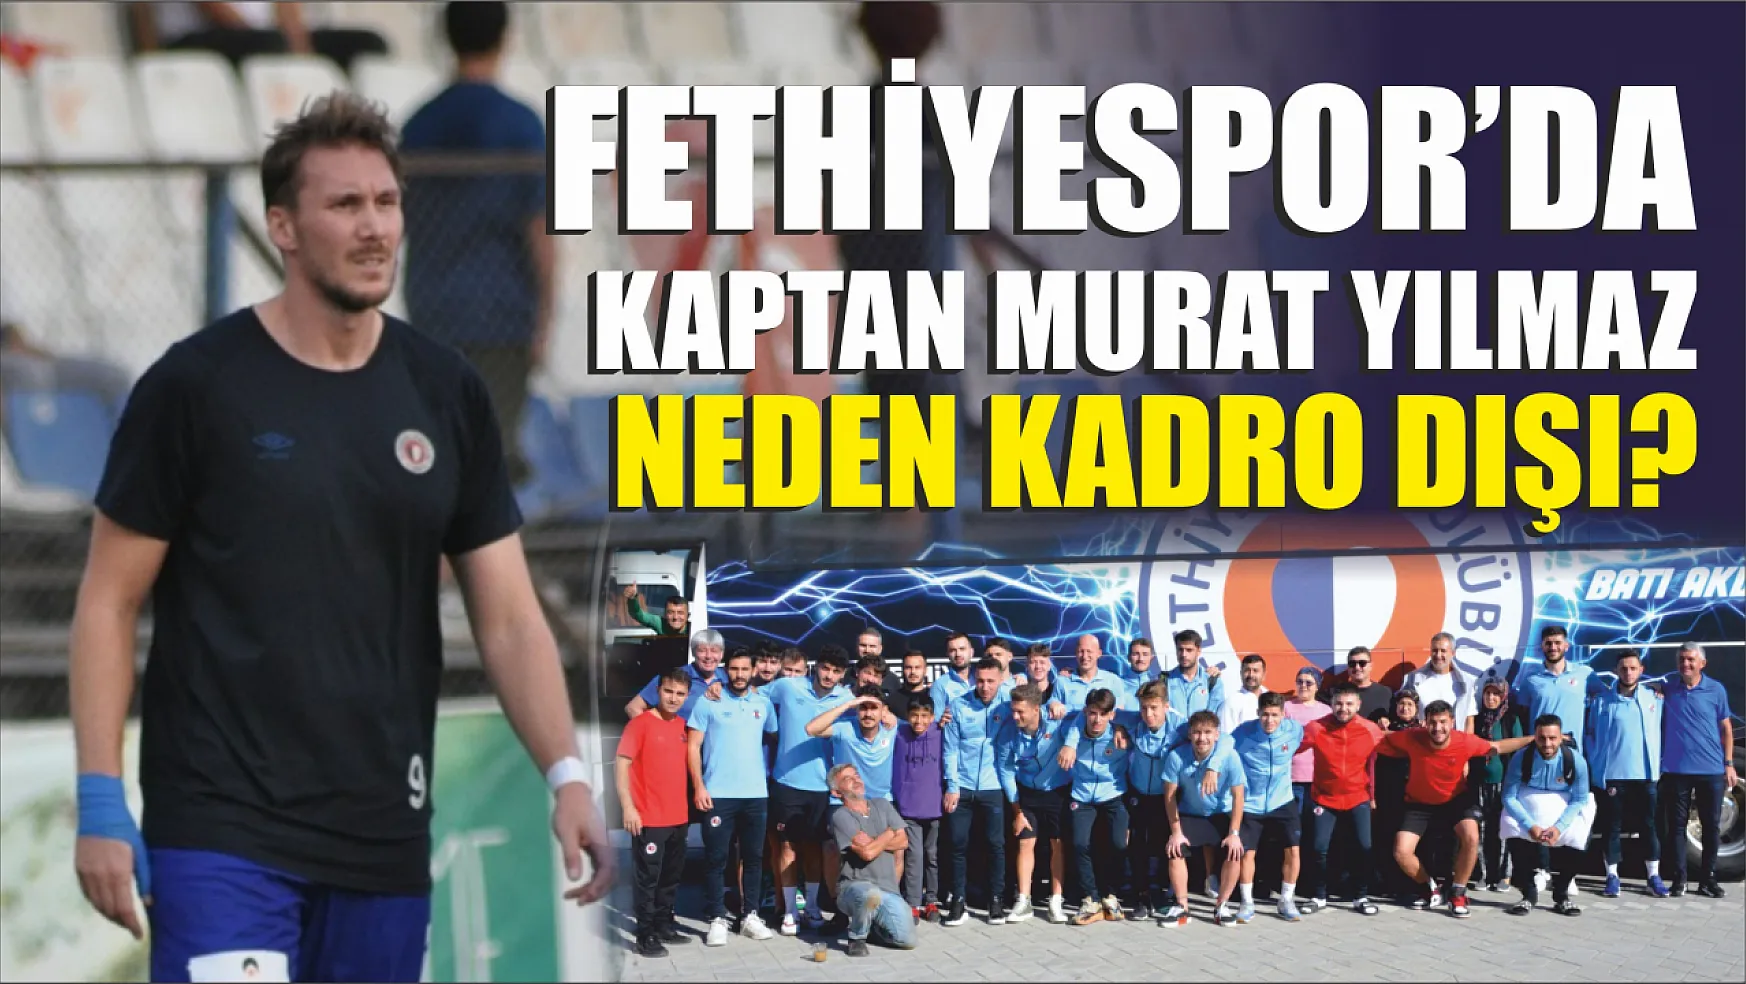 Fethiyespor'da Kaptan Murat Yılmaz Neden Kadro Dışı?